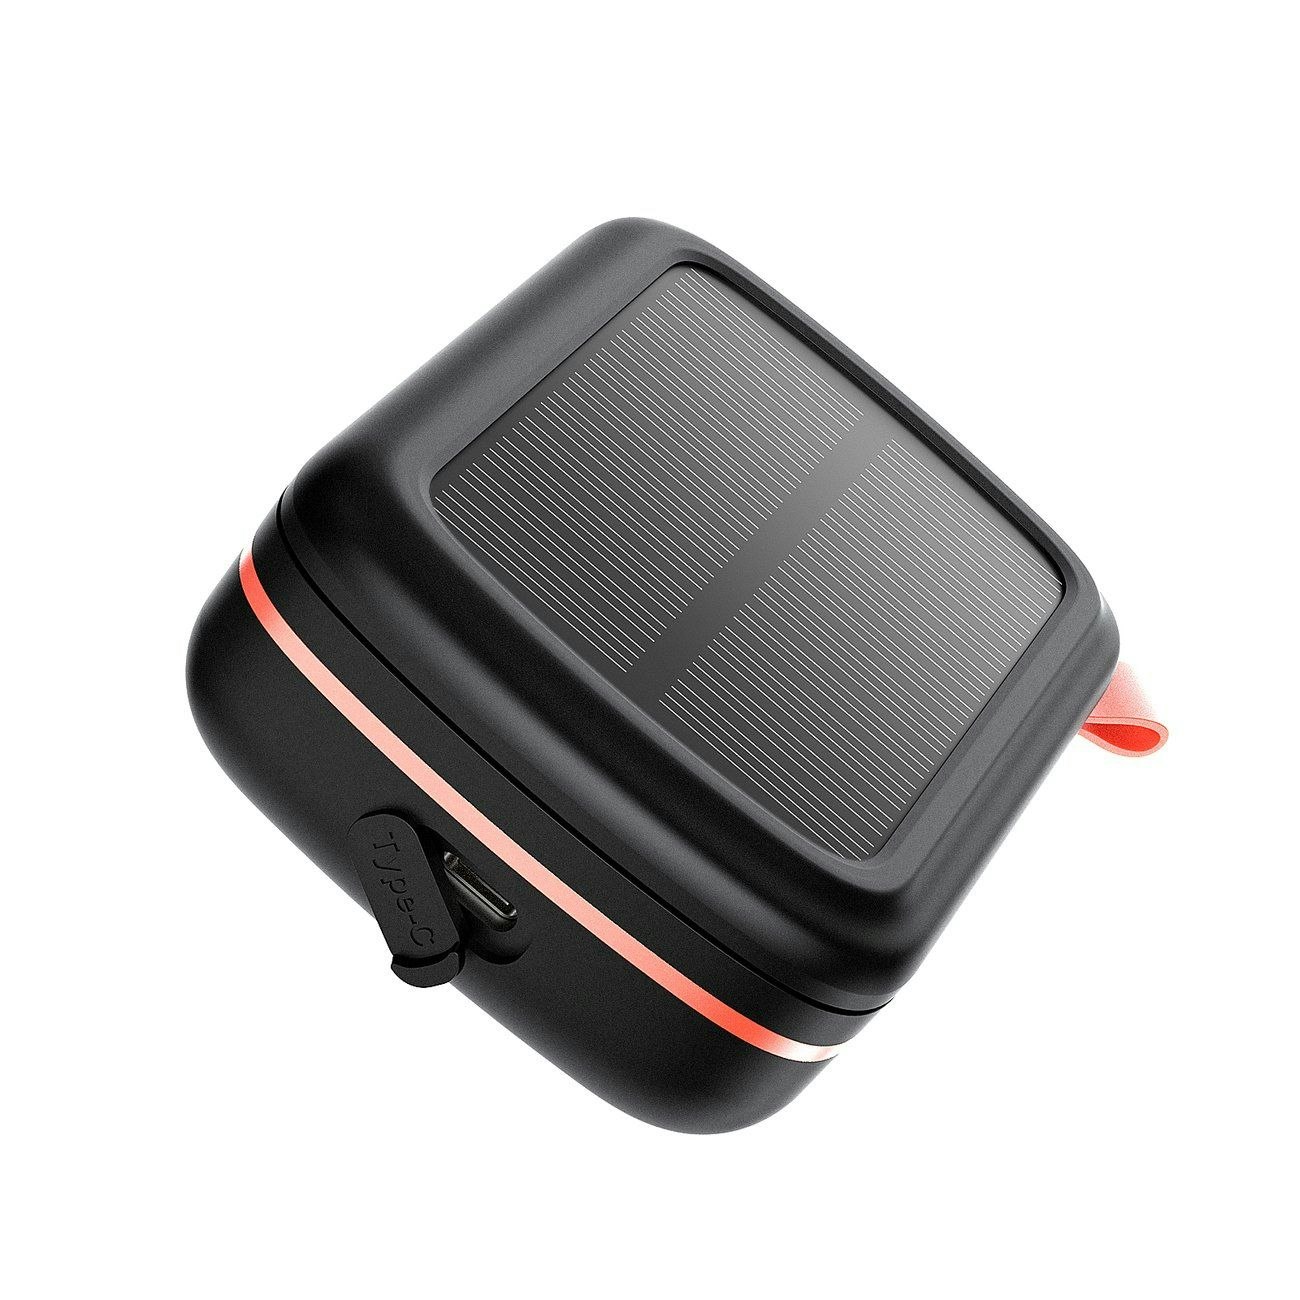 Choetech TWS trådlösa hörlurar vattentäta med solpanel och inbyggd 2500mAh powerbank svart bild 3